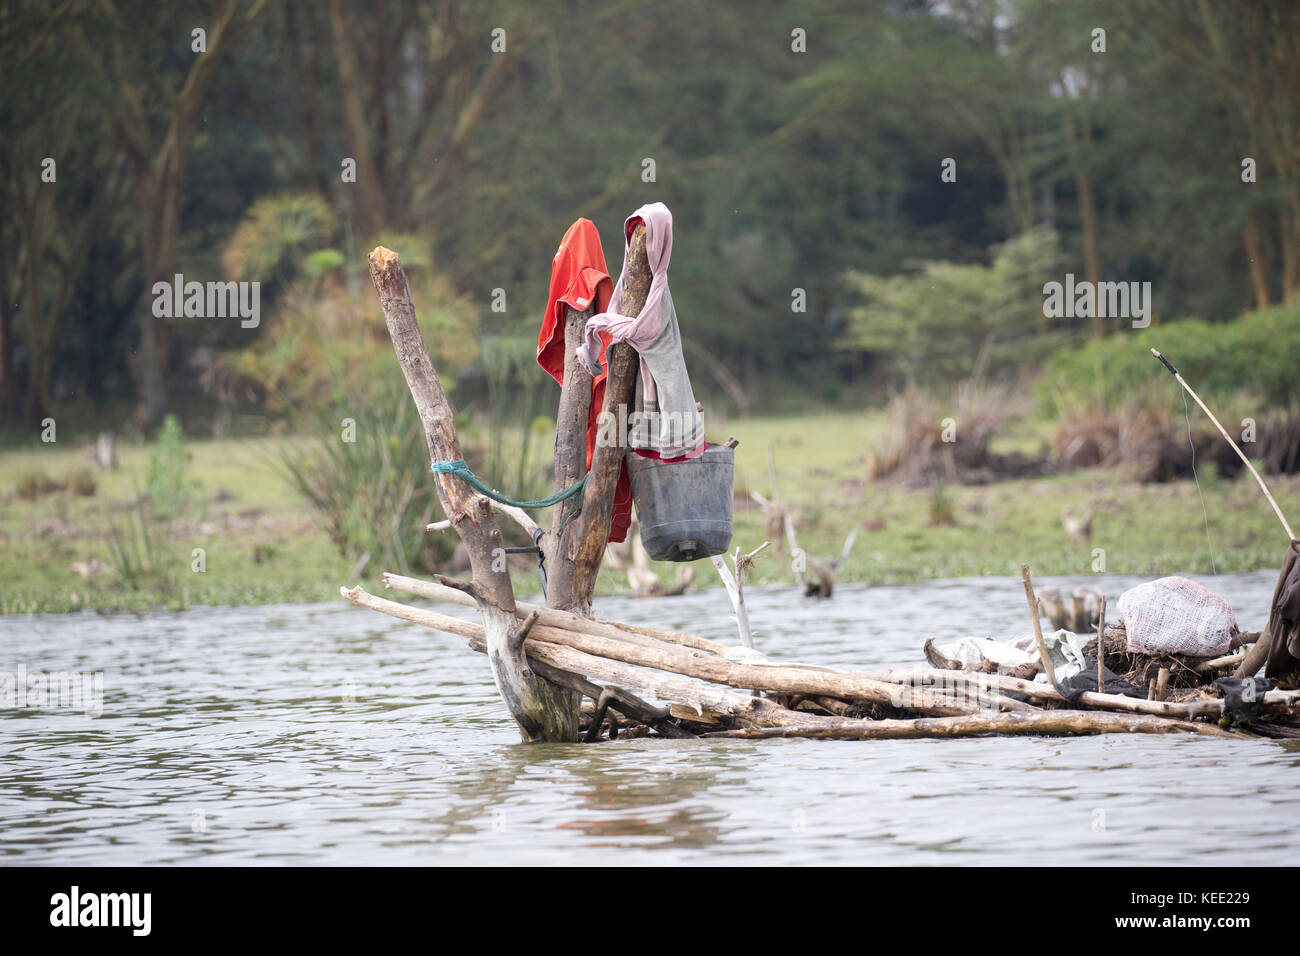 Espantapájaros colocado sobre la pesca de balsa para asustar a los hipopótamos lago Naivasha Kenia Foto de stock